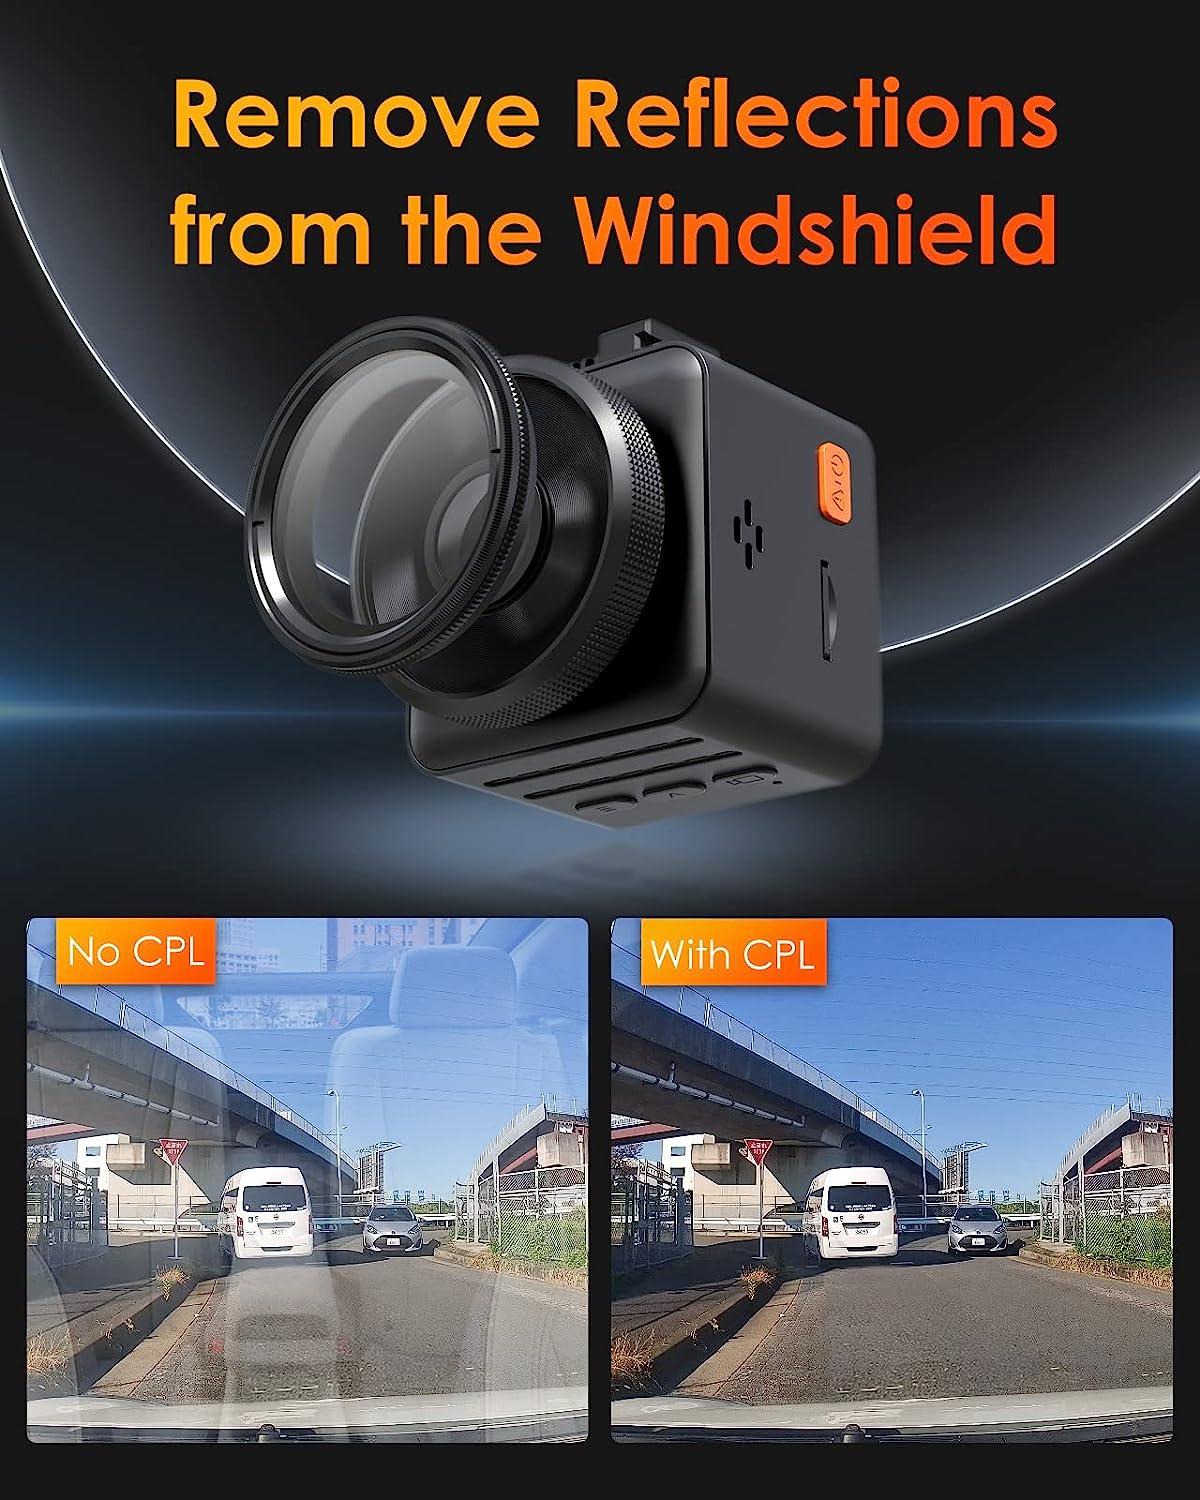 Vantrue E1Lite Front camera for Car 1080P Mini Dashcam with GPS